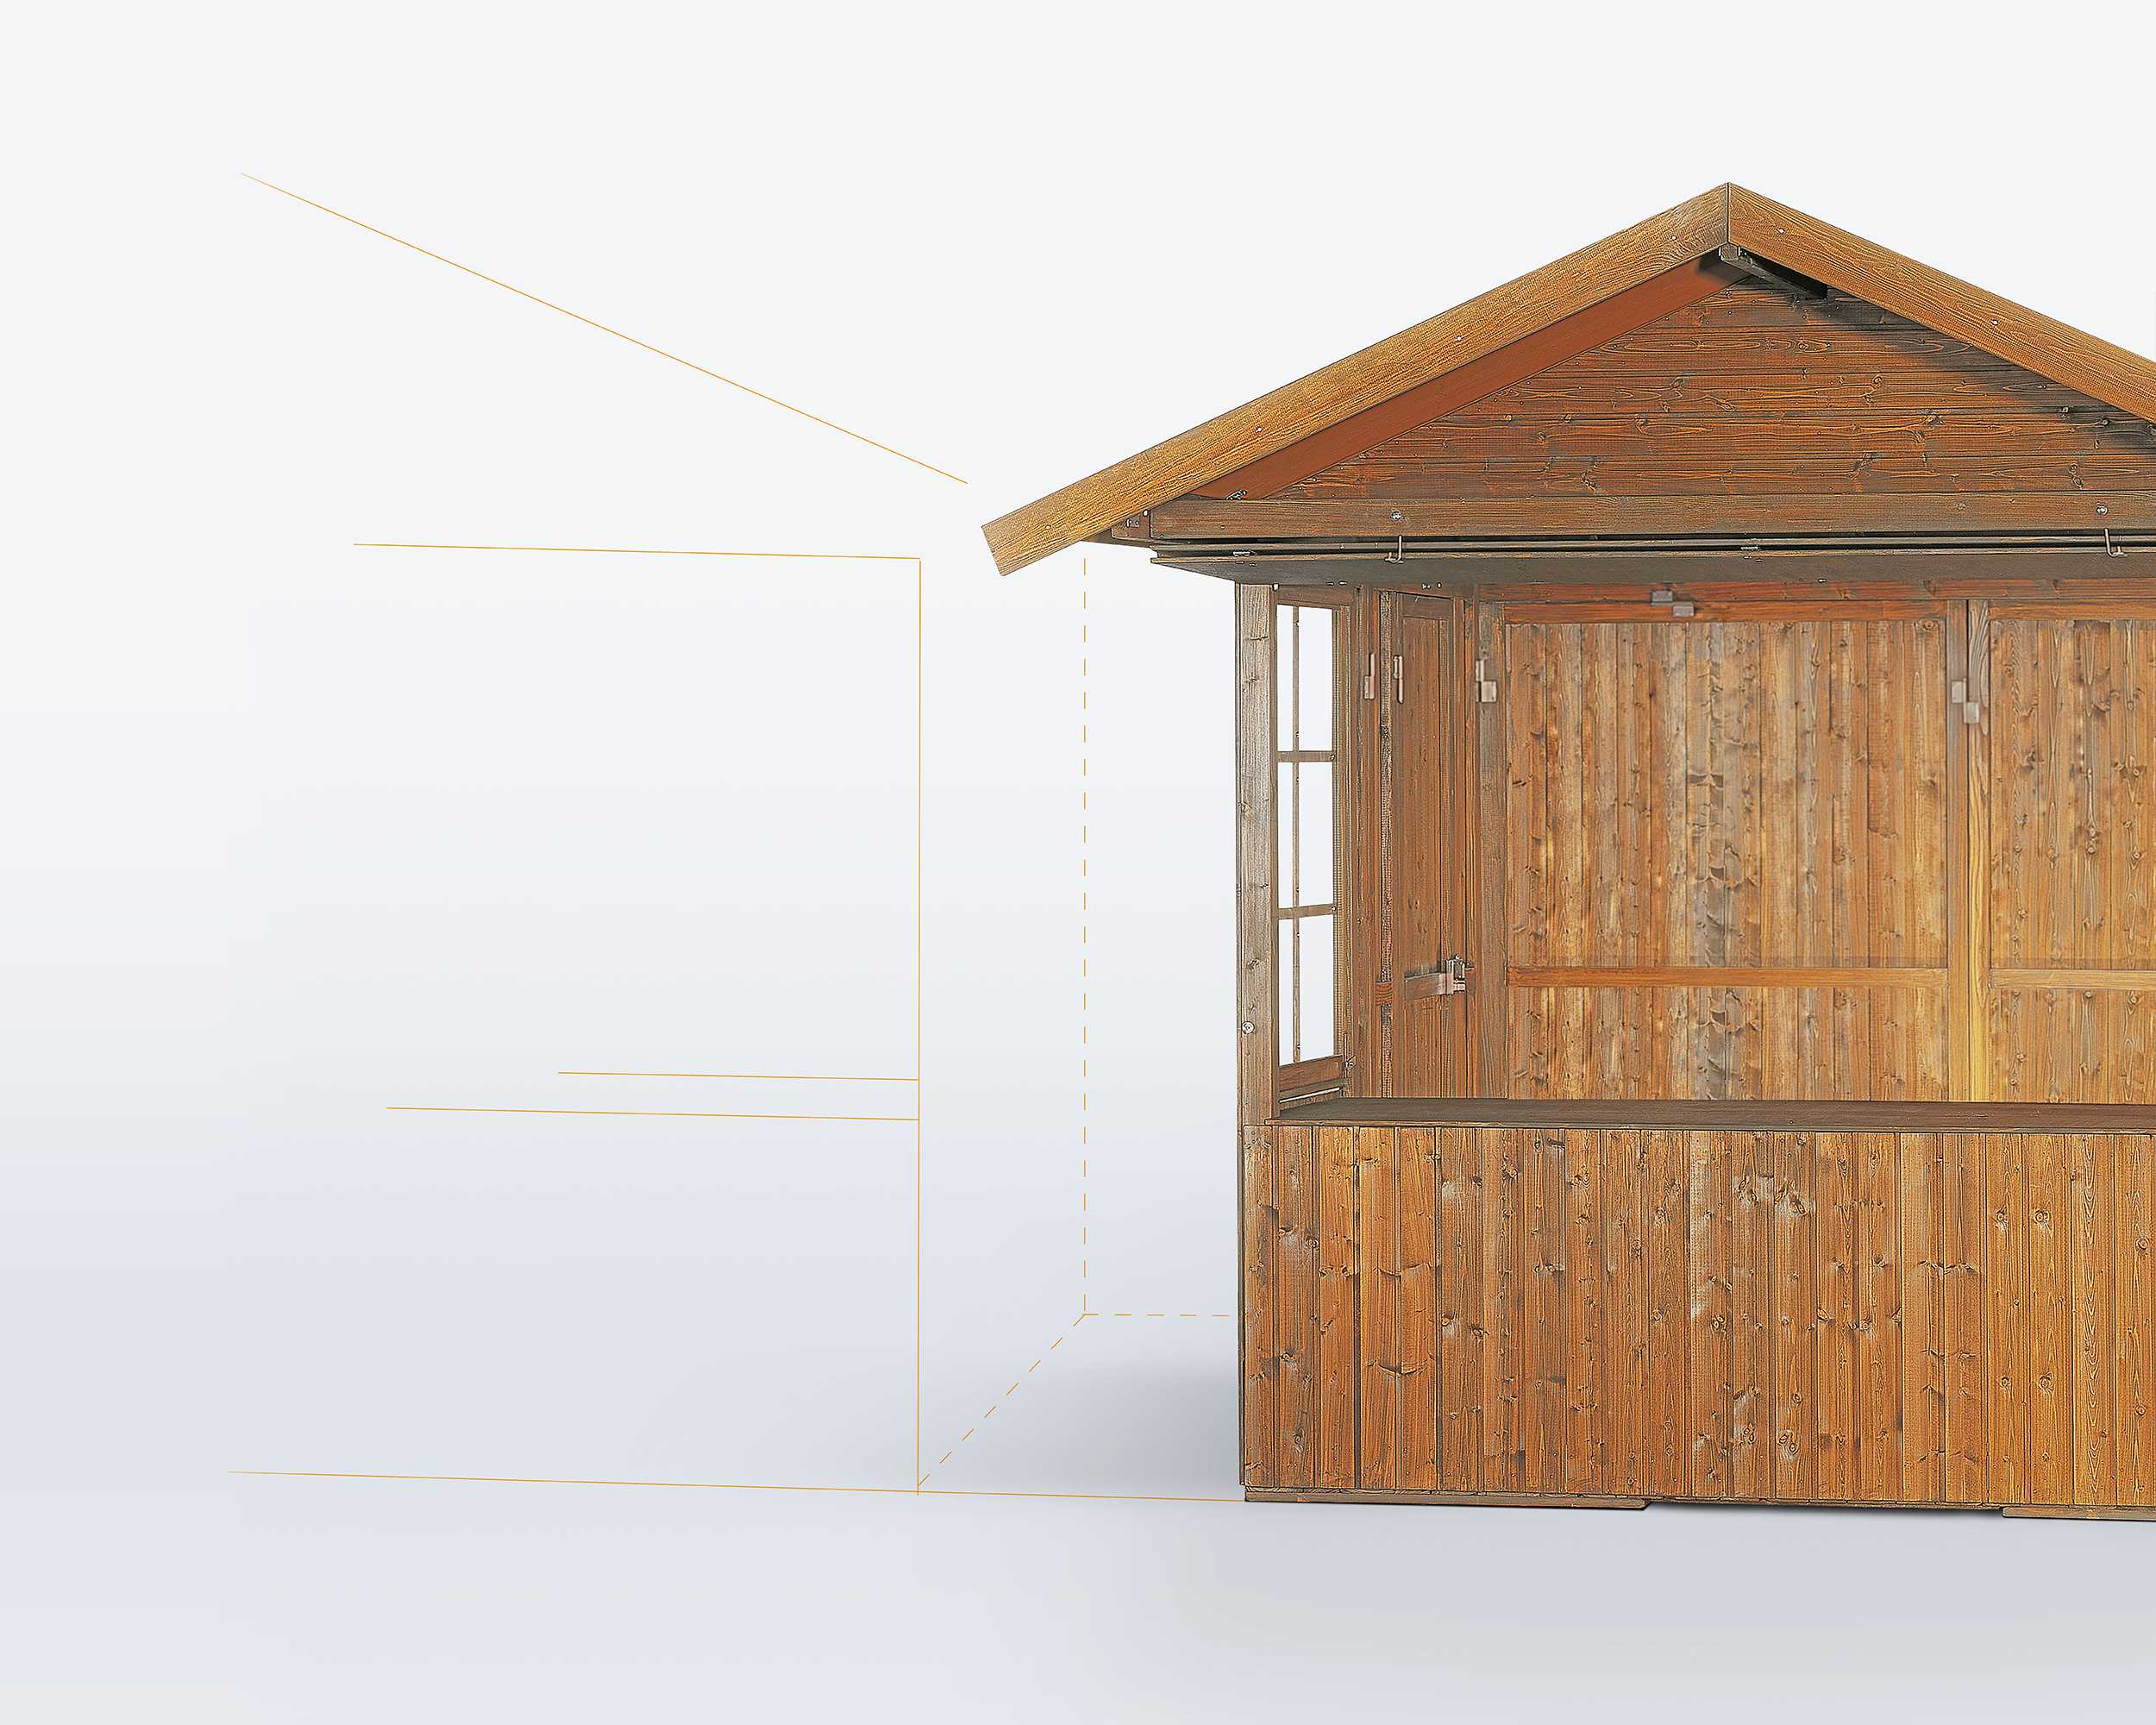 Die Verkaufshütte aus Holz kann einfach durch Zwischenbauelemente erweitert werden.